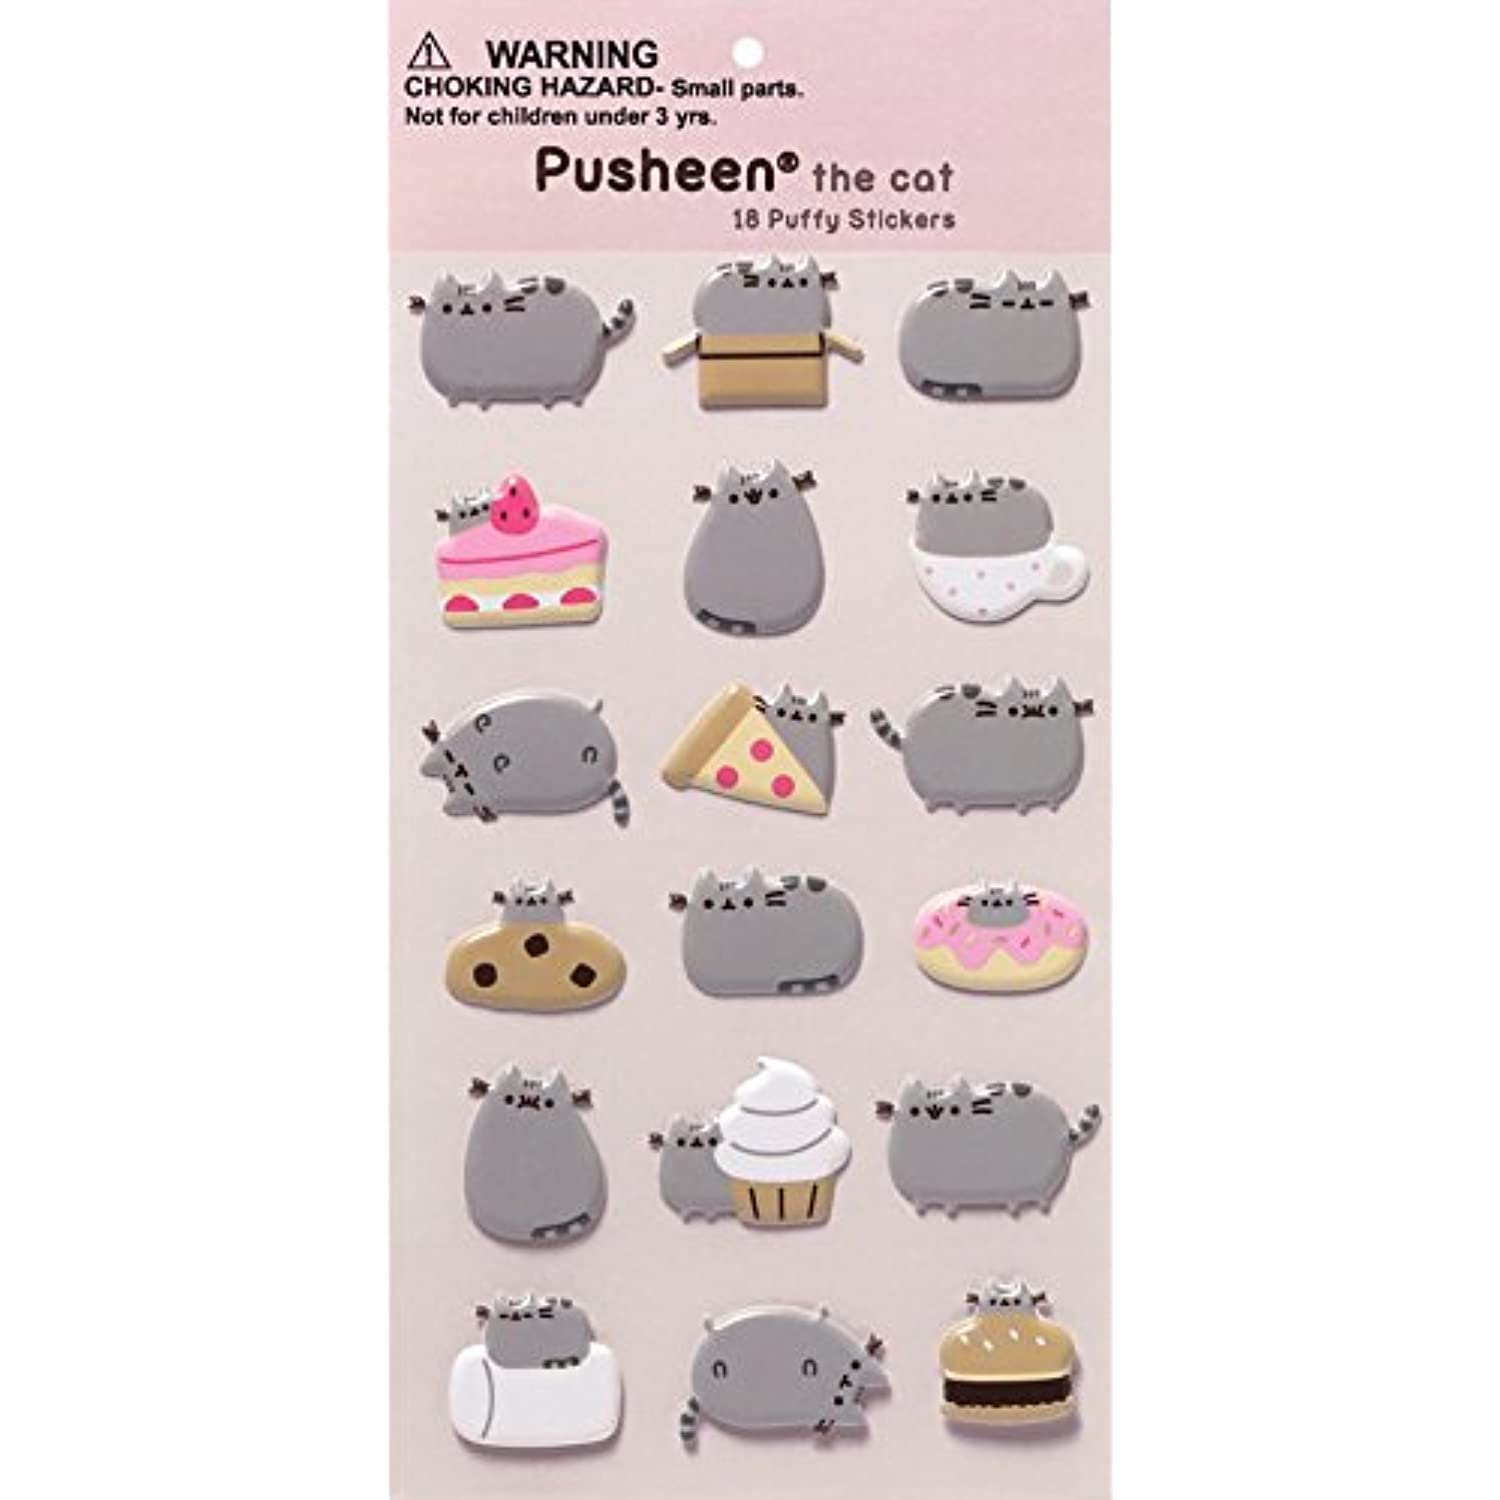 GUND Pusheen Sushi Snackable 9.5" Stuffed Toy Plush with Puffy Pusheen Sticker Book